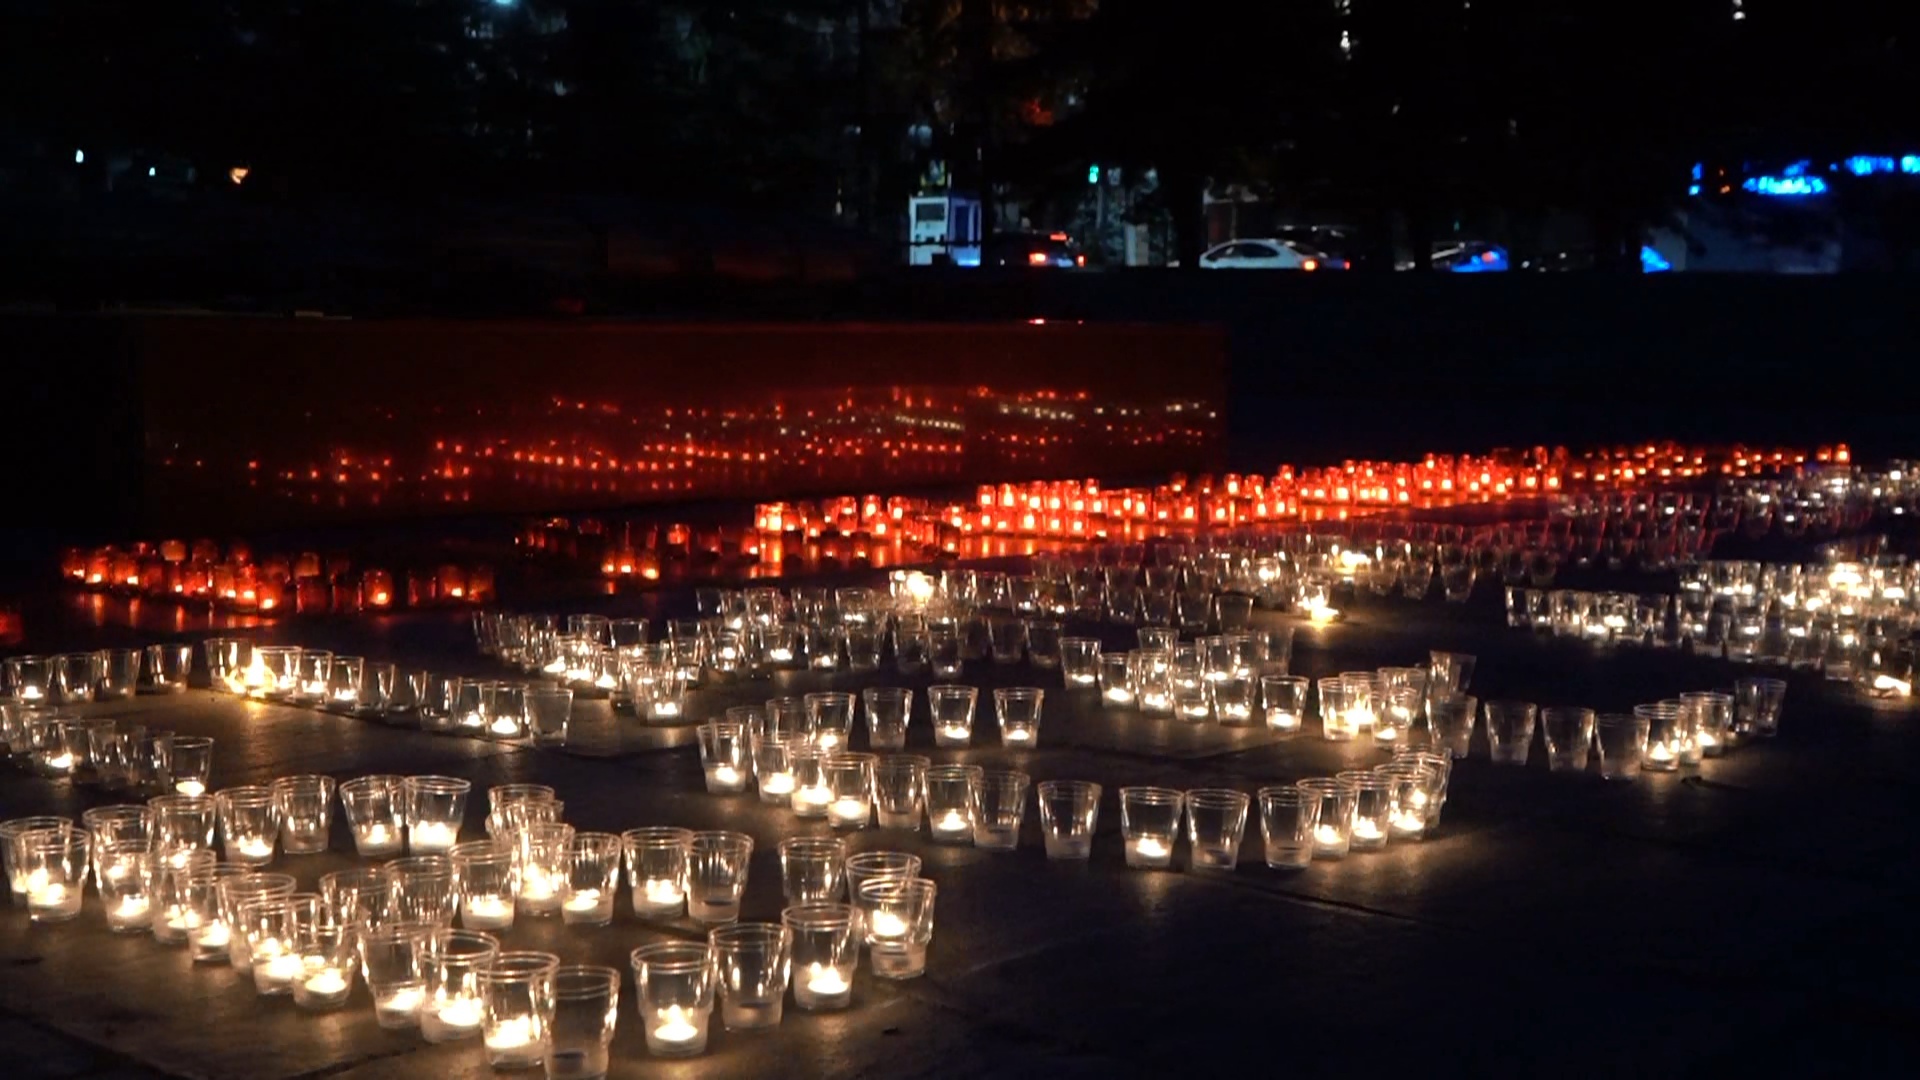 Свечи памяти зажигают в городах Челябинской области